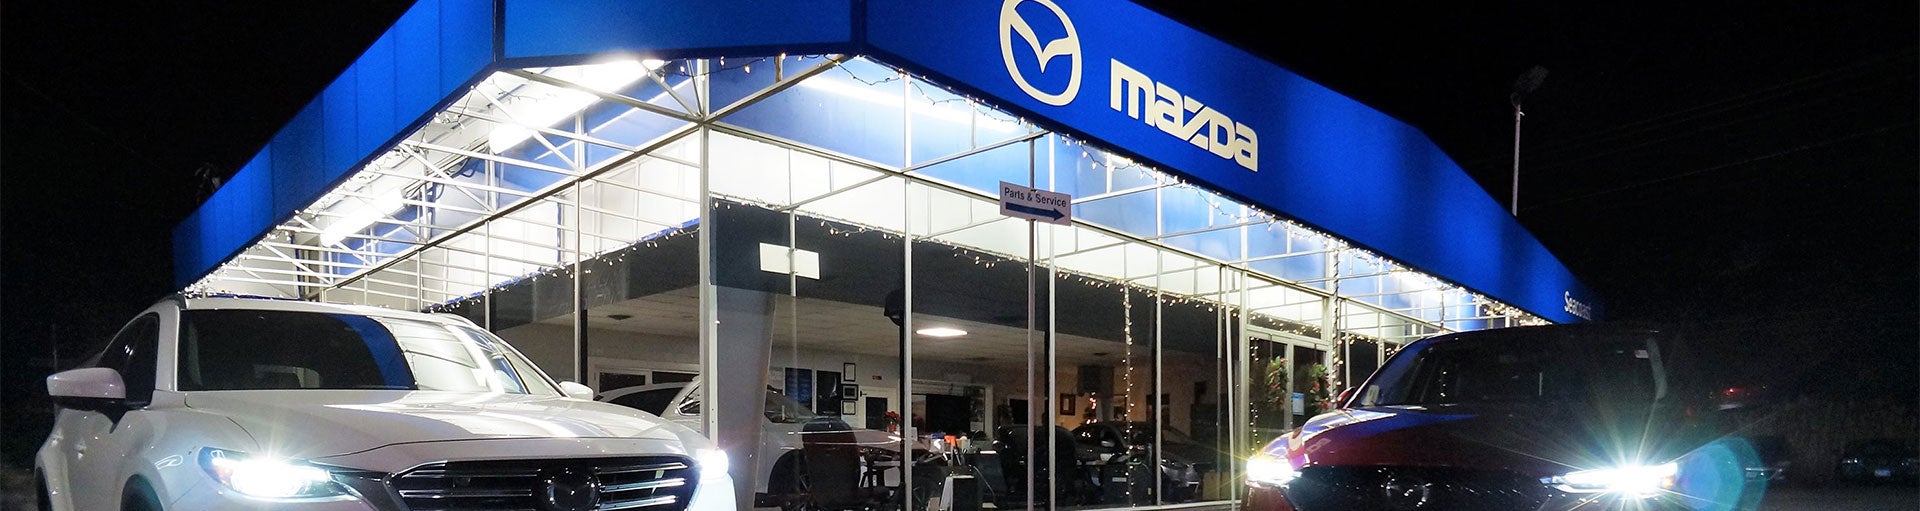 Seacoast Mazda | MAZDA TIRE ROTATION SERVICE